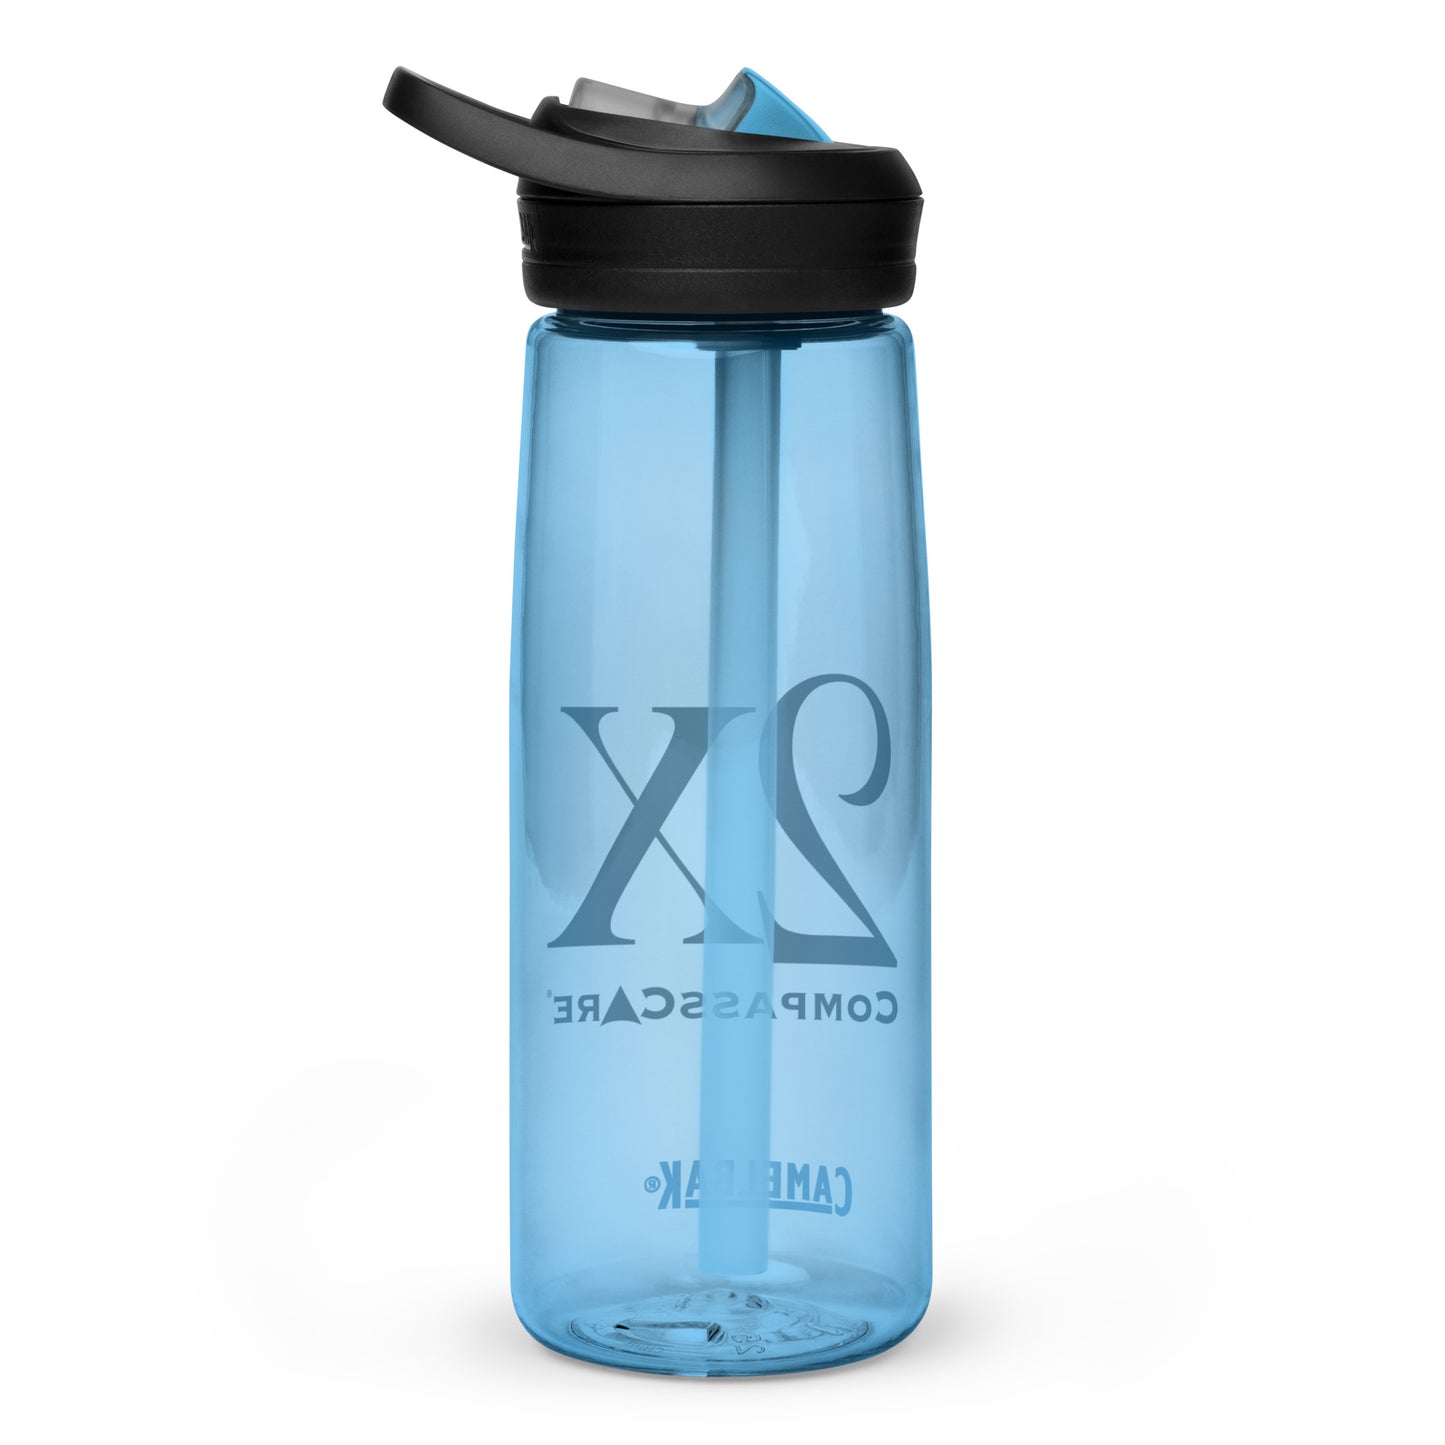 2X Sports Water Bottle